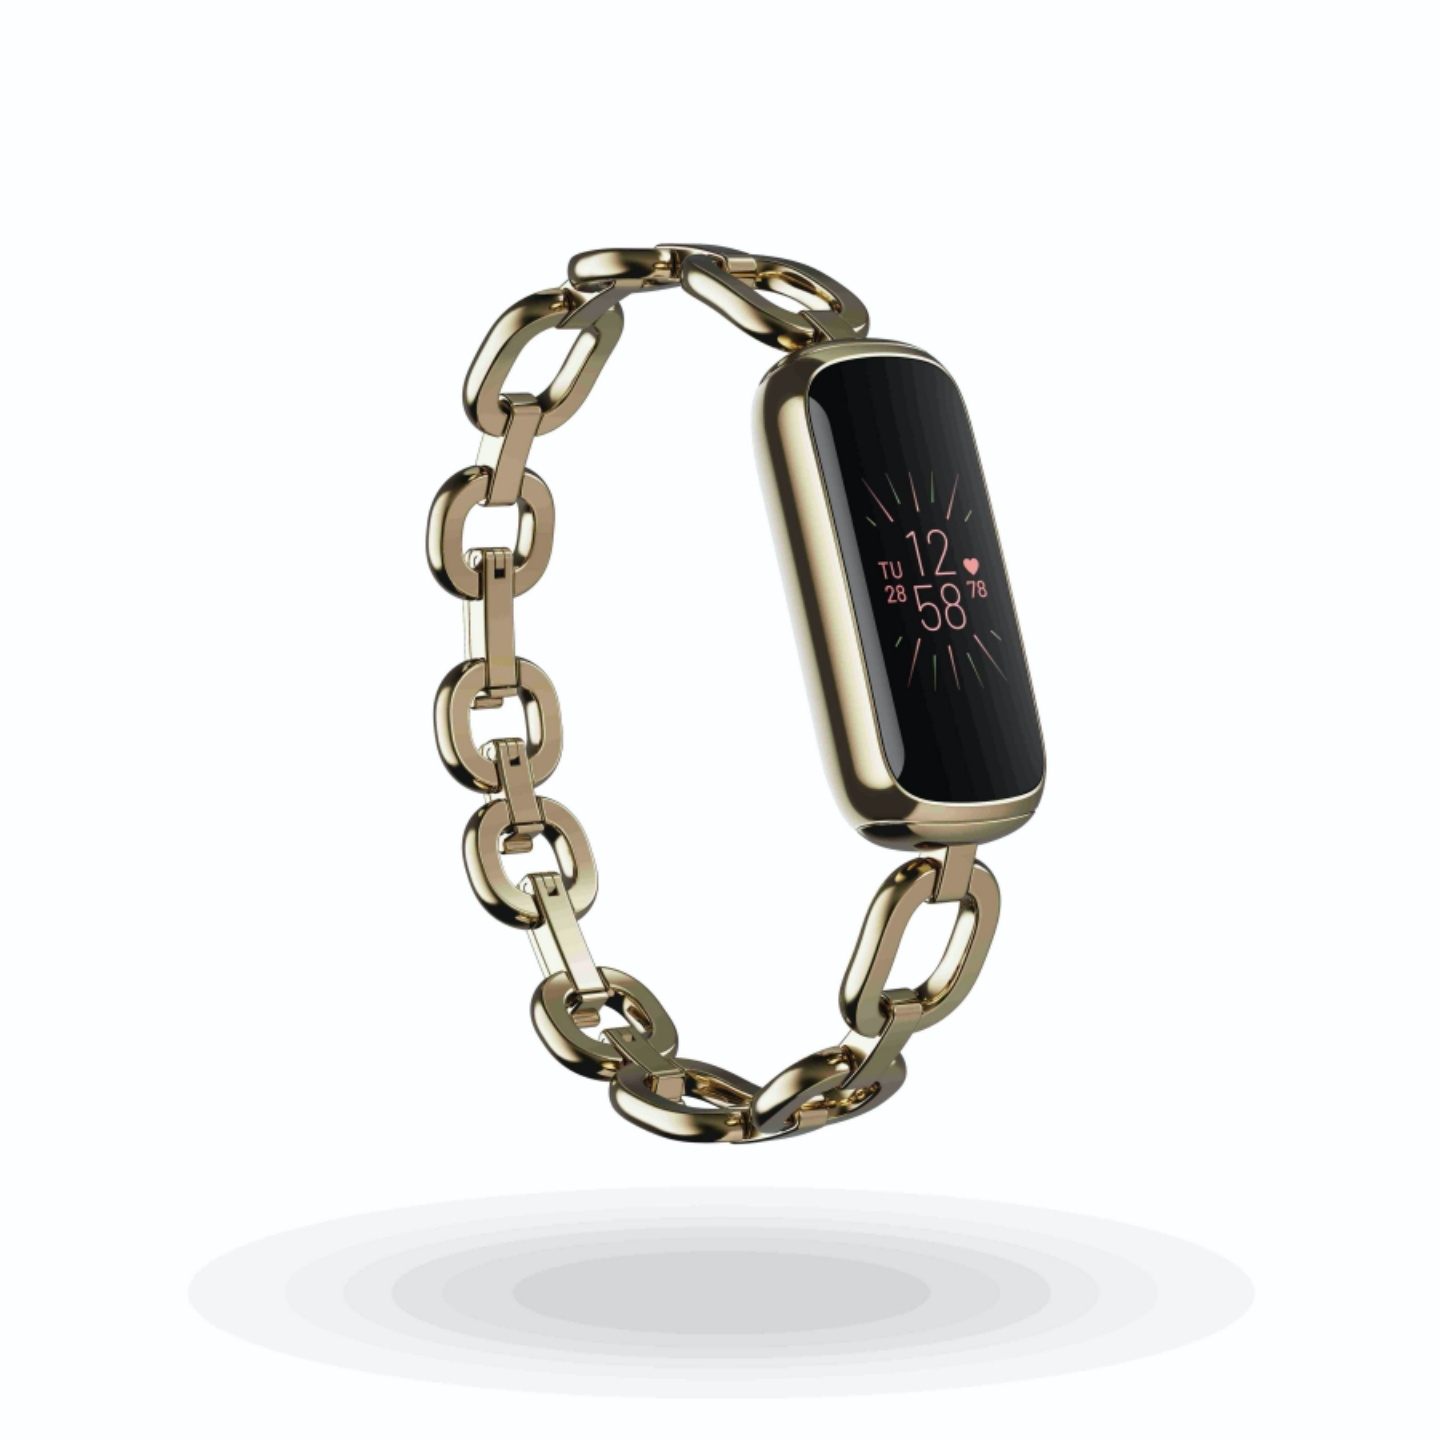 Fitbit 新款智慧手環 Luxe 亮相！具備壓力、血糖追蹤，還有心率偵測功能，預計 6 月正式開賣，售價新台幣 4,490 元